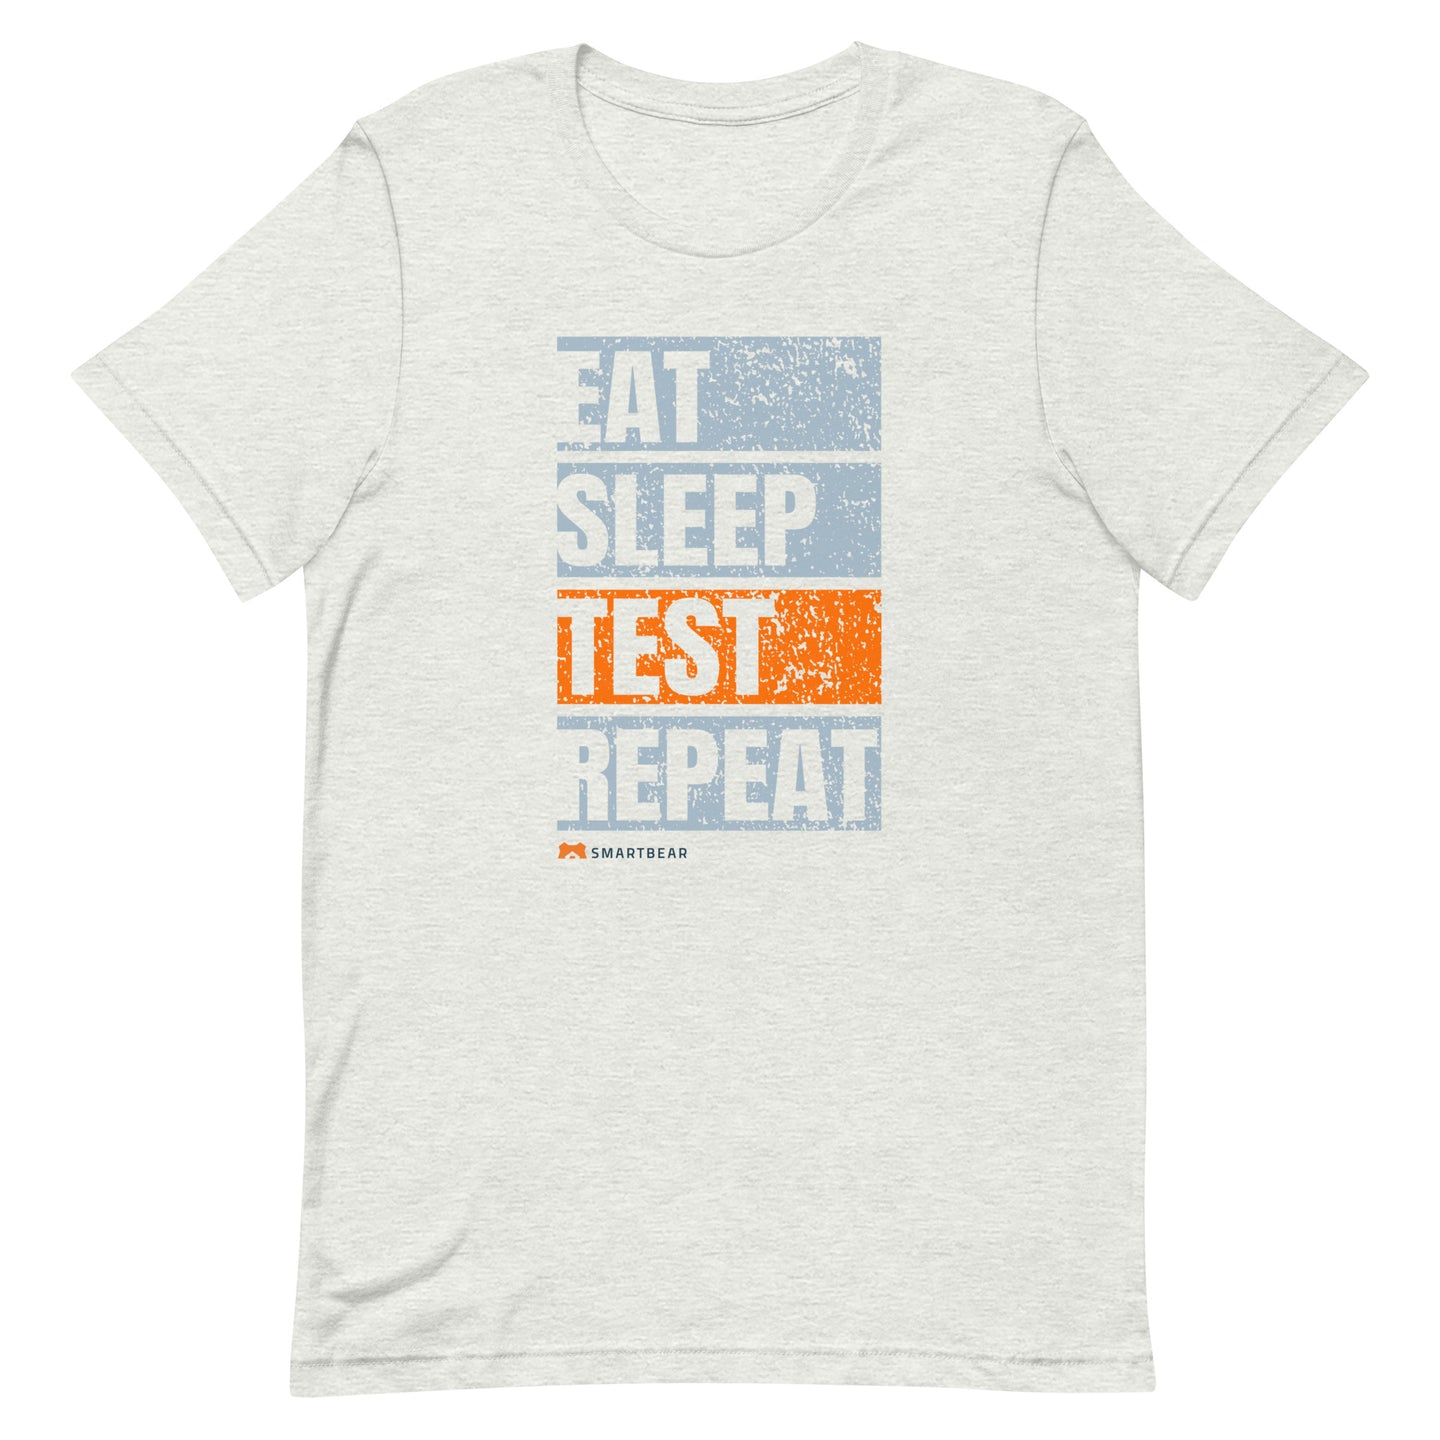 Eat Sleep Test Repeat Tee